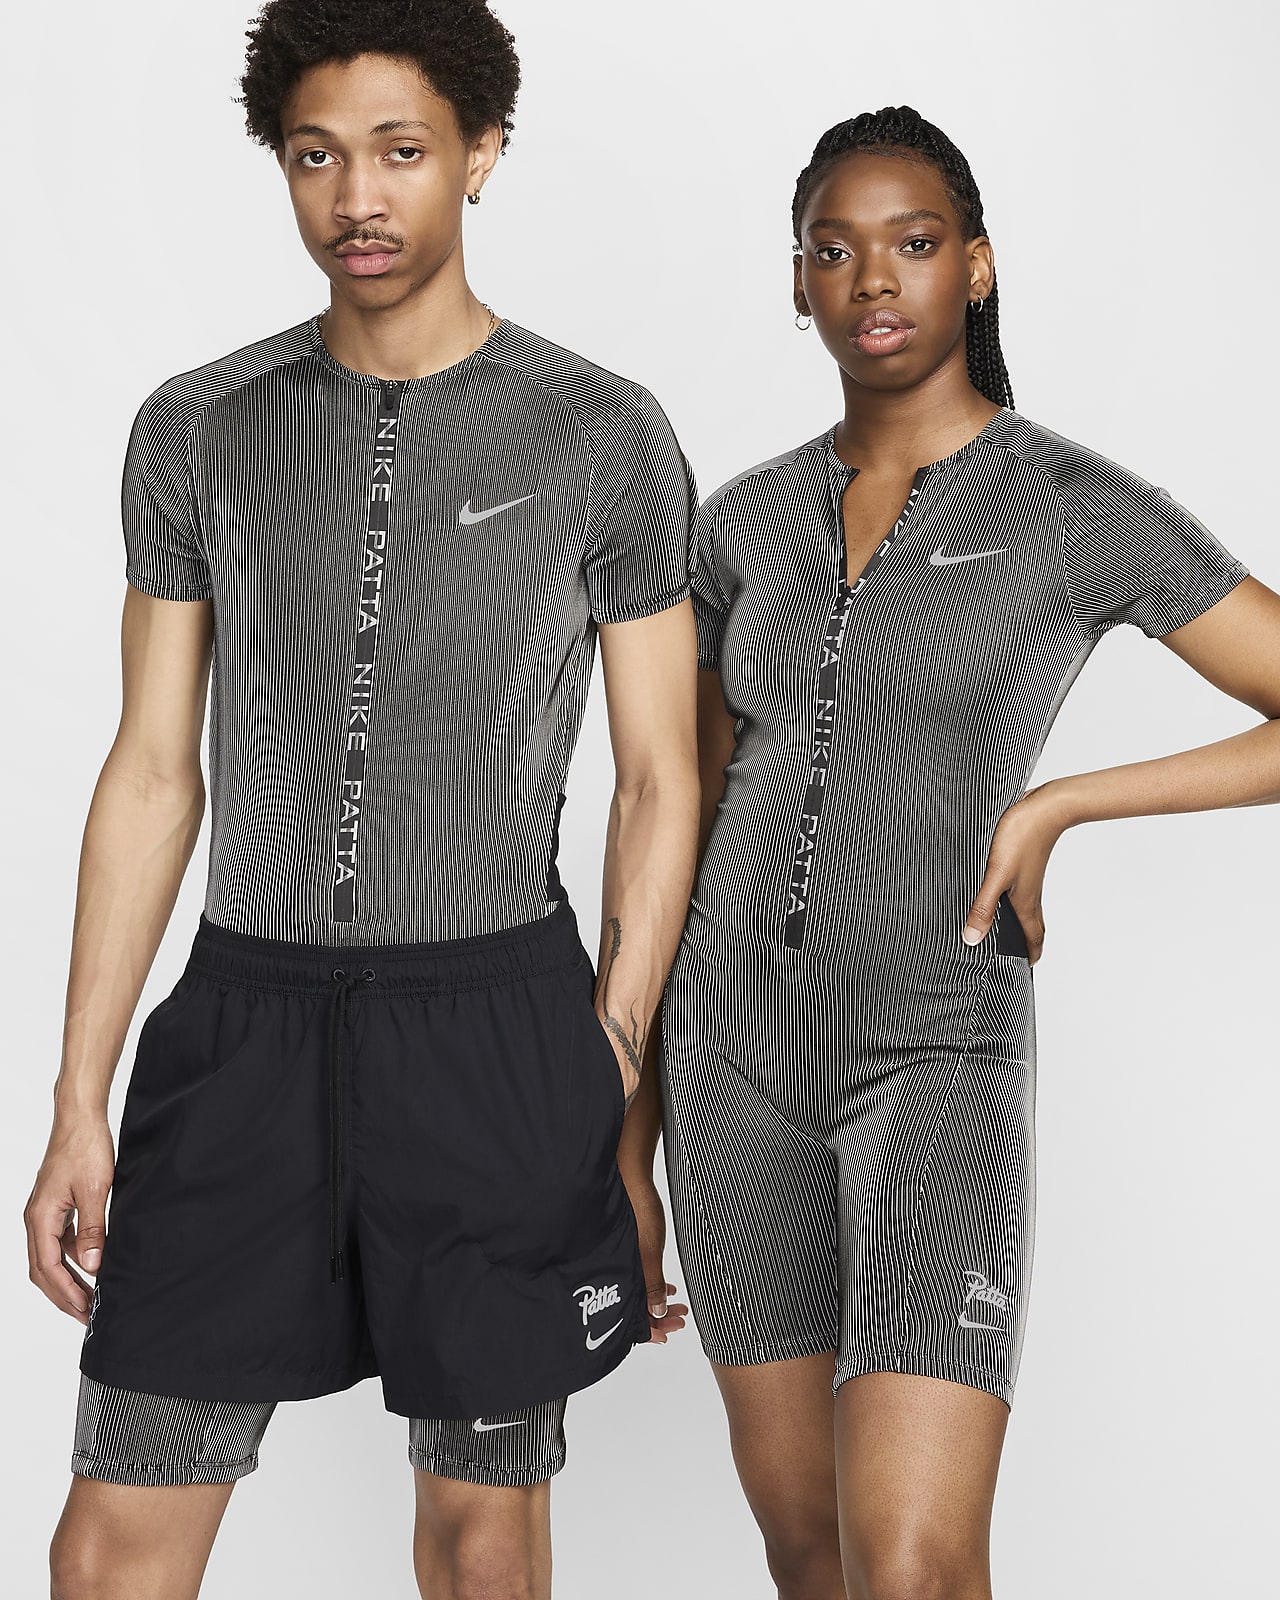 Nike x Patta Running Team Vestit de competició